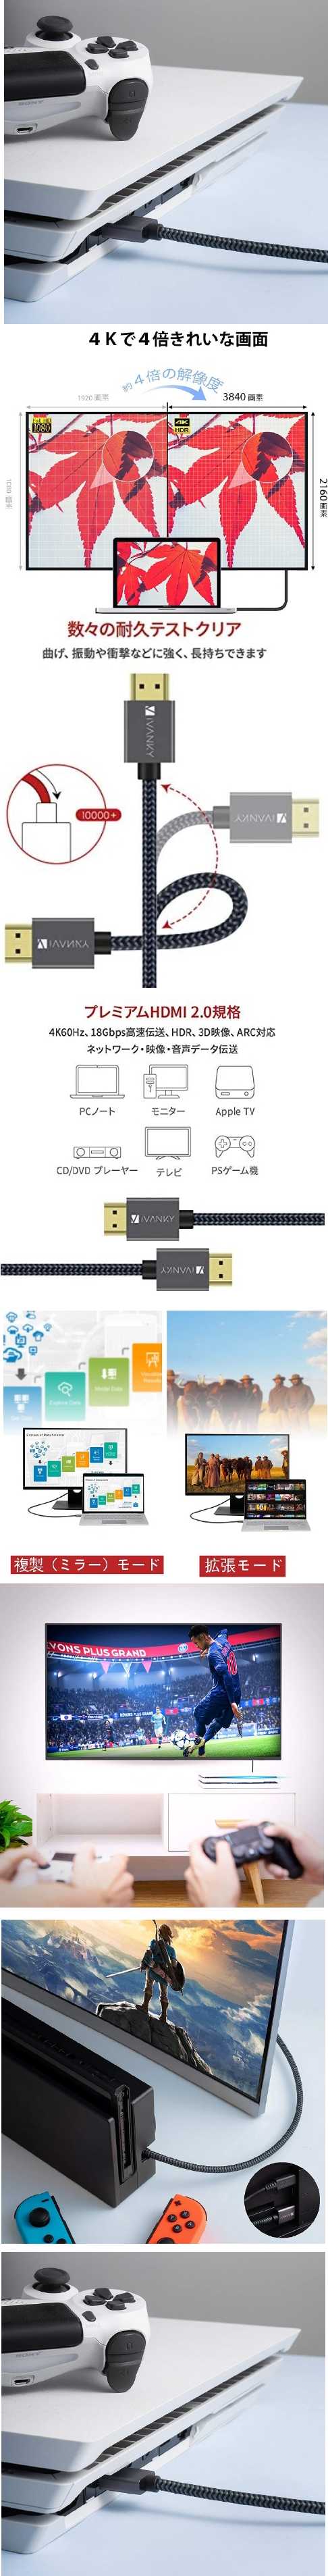 激安本物 HDMI ケーブル【4.5M/4K60Hz対応】iVANKY HDMI2.0規格 PS4/3，Xbox， Nintendo Switch，  Apple HDMIケーブル